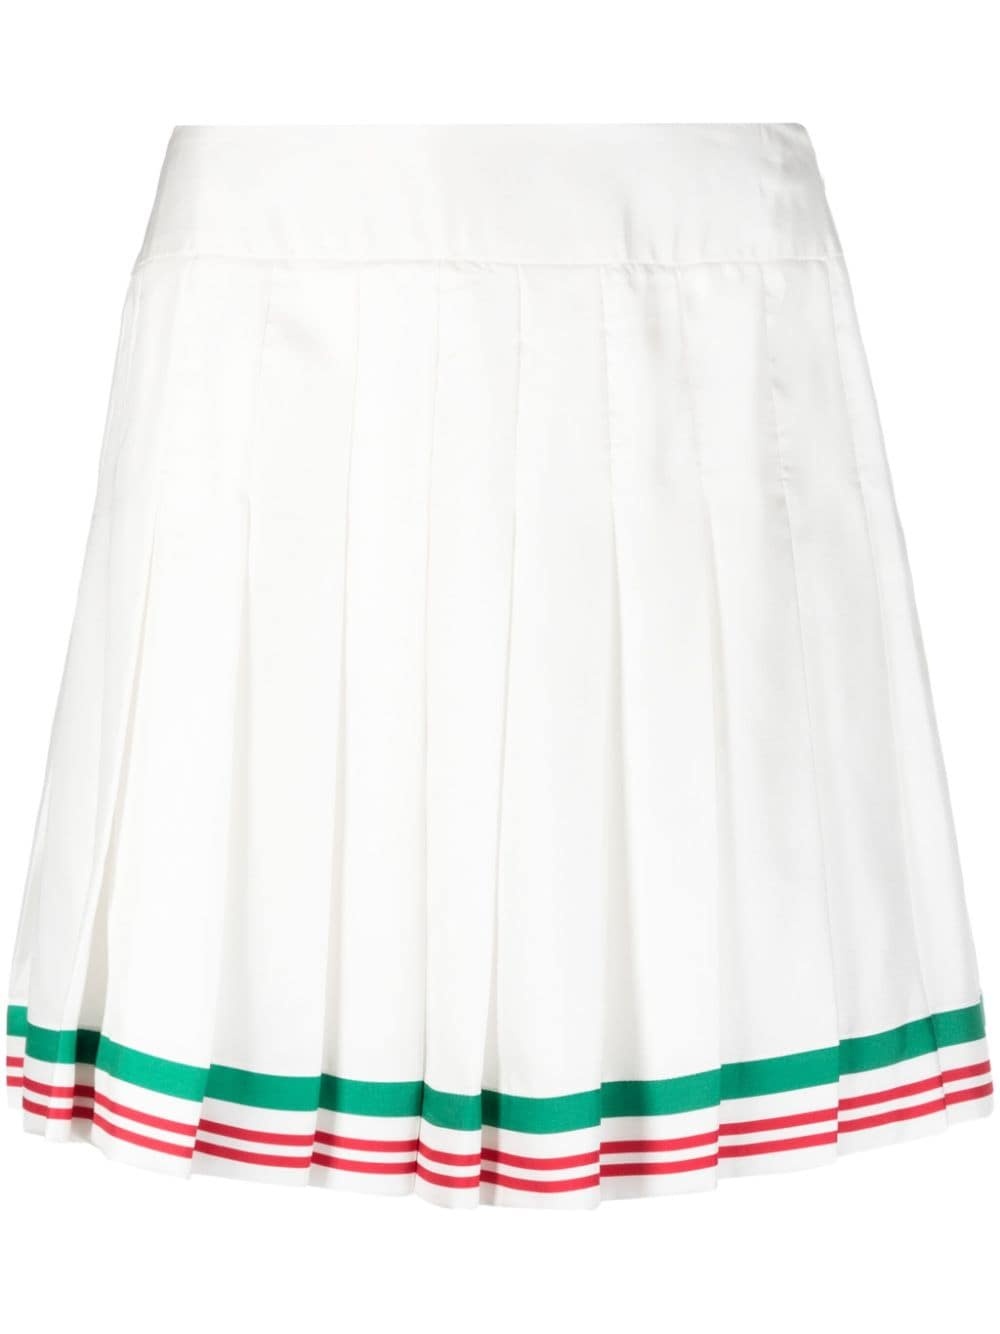 Casa Way tennis skirt - 1